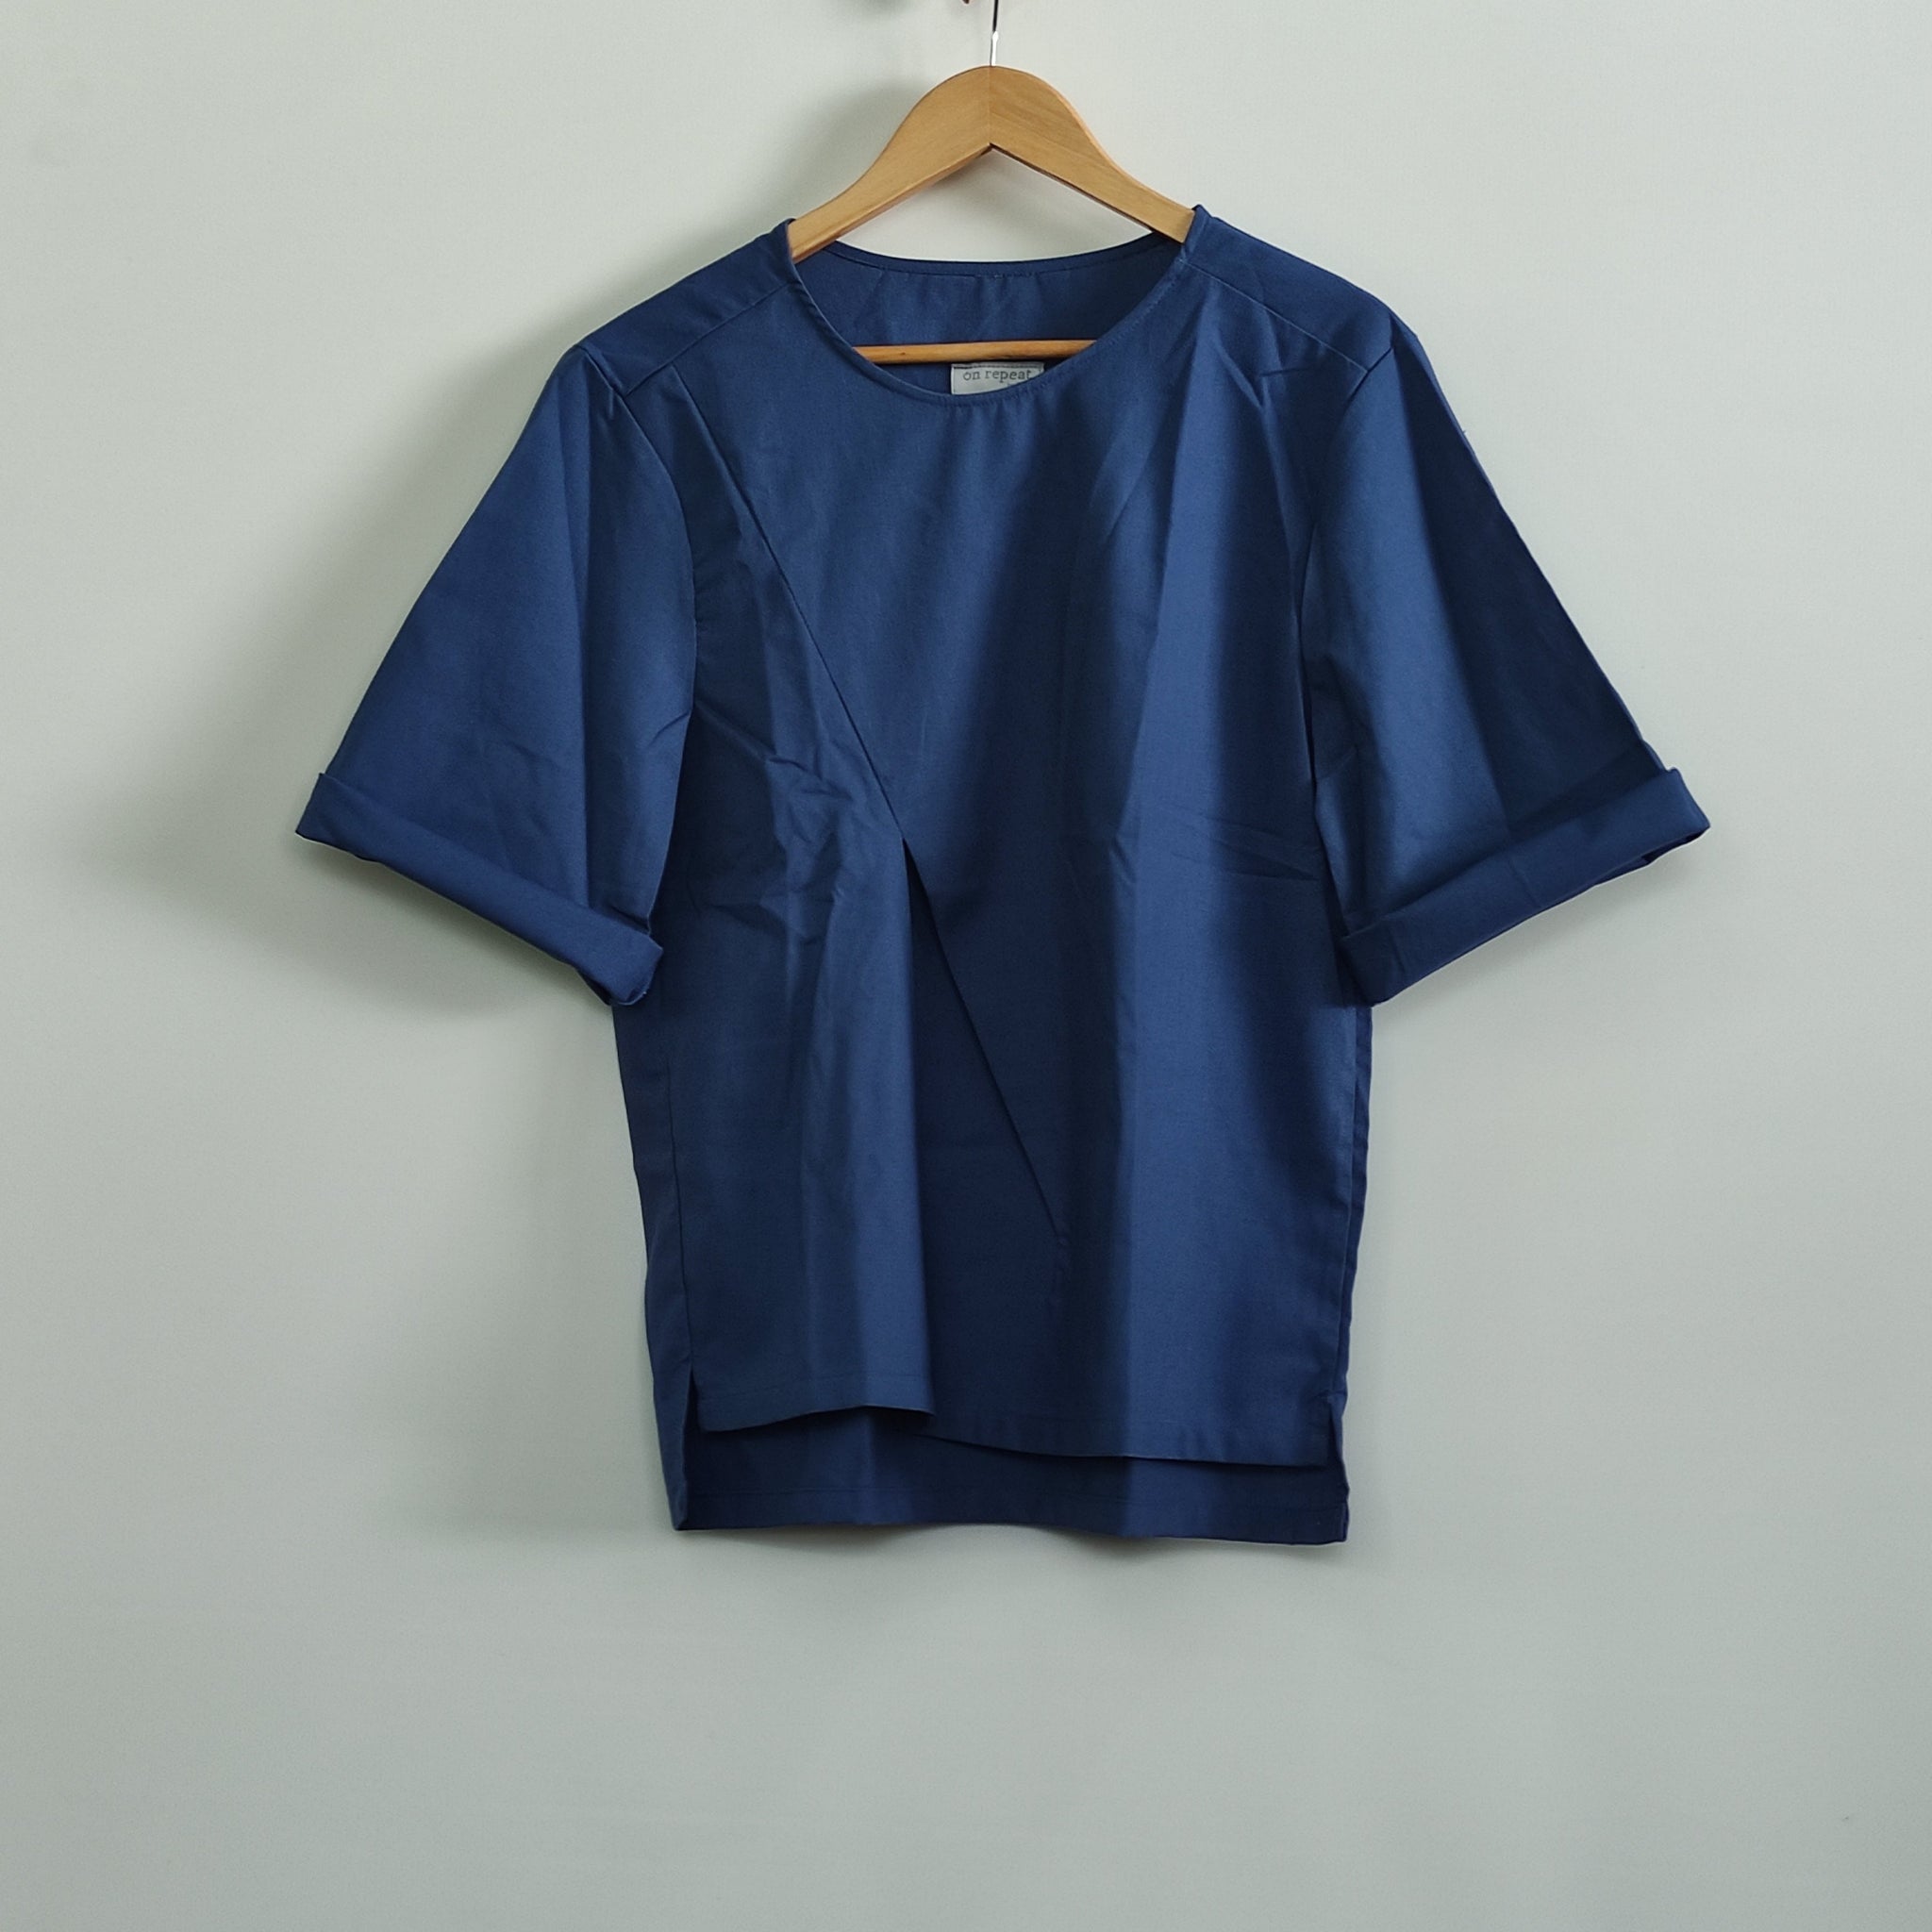 [SAMPLE] Mondrain Shirt Blue Fashion Rags2Riches